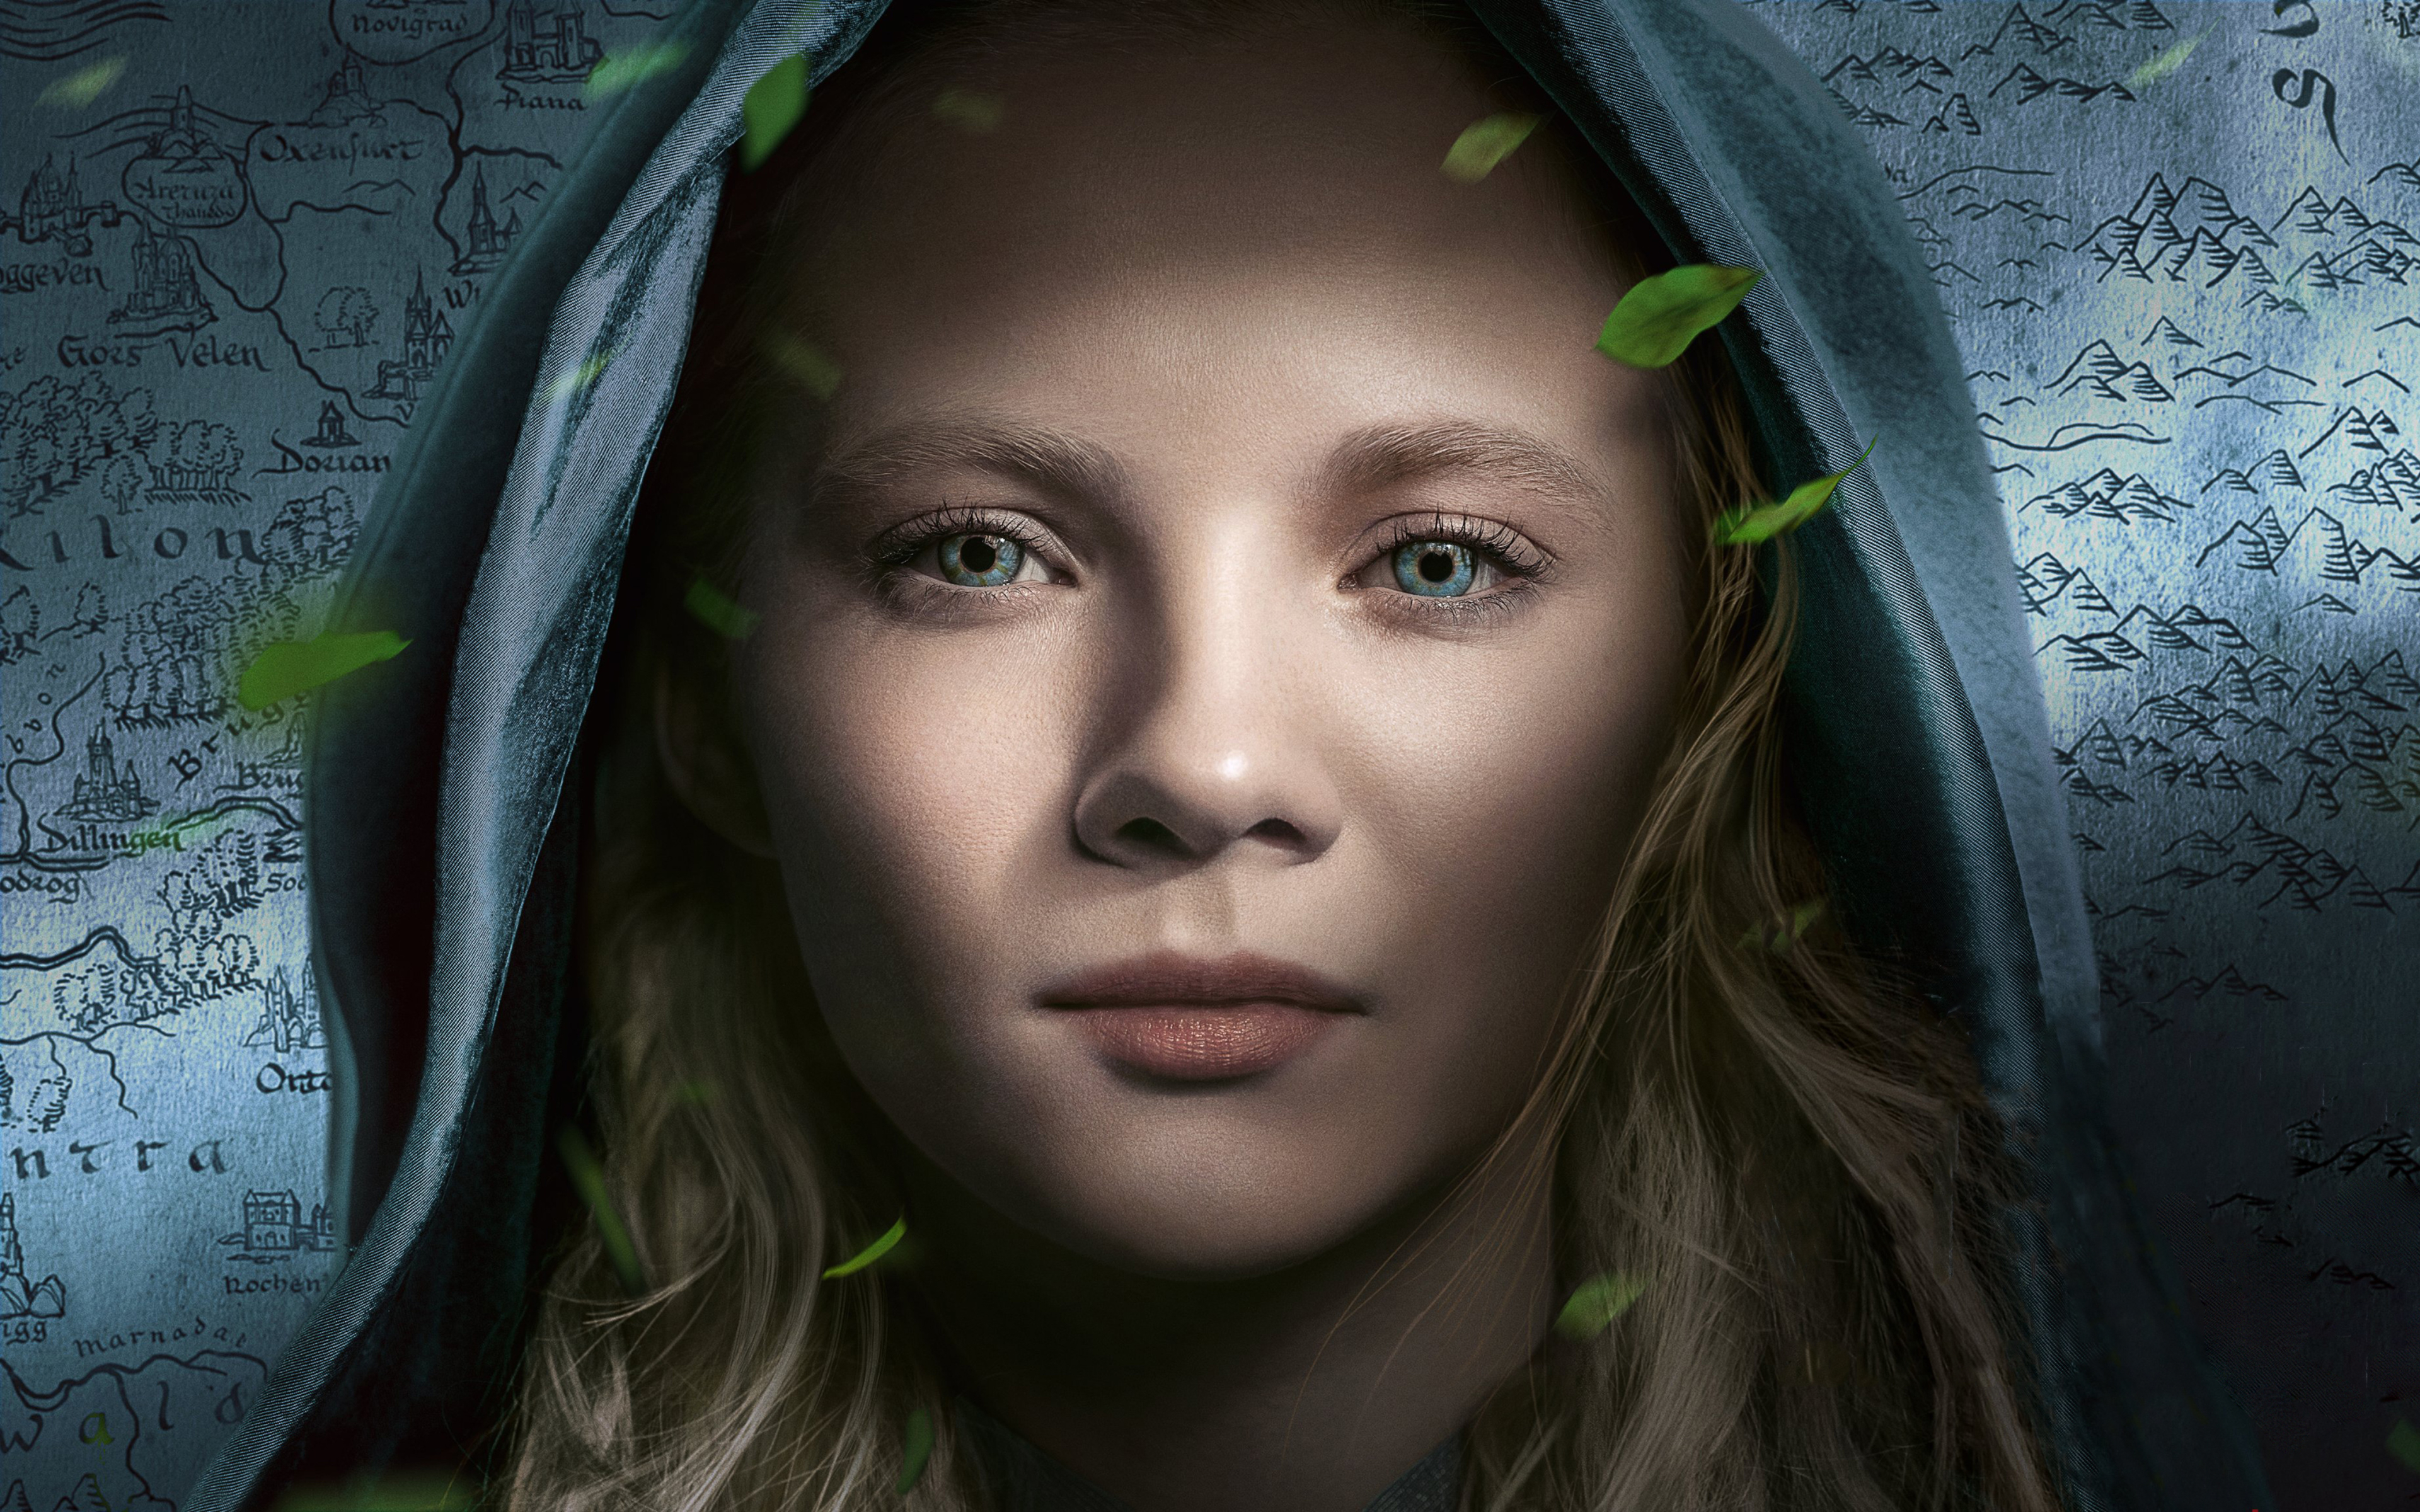 Ciri The Witcher Netflix , HD Wallpaper & Backgrounds